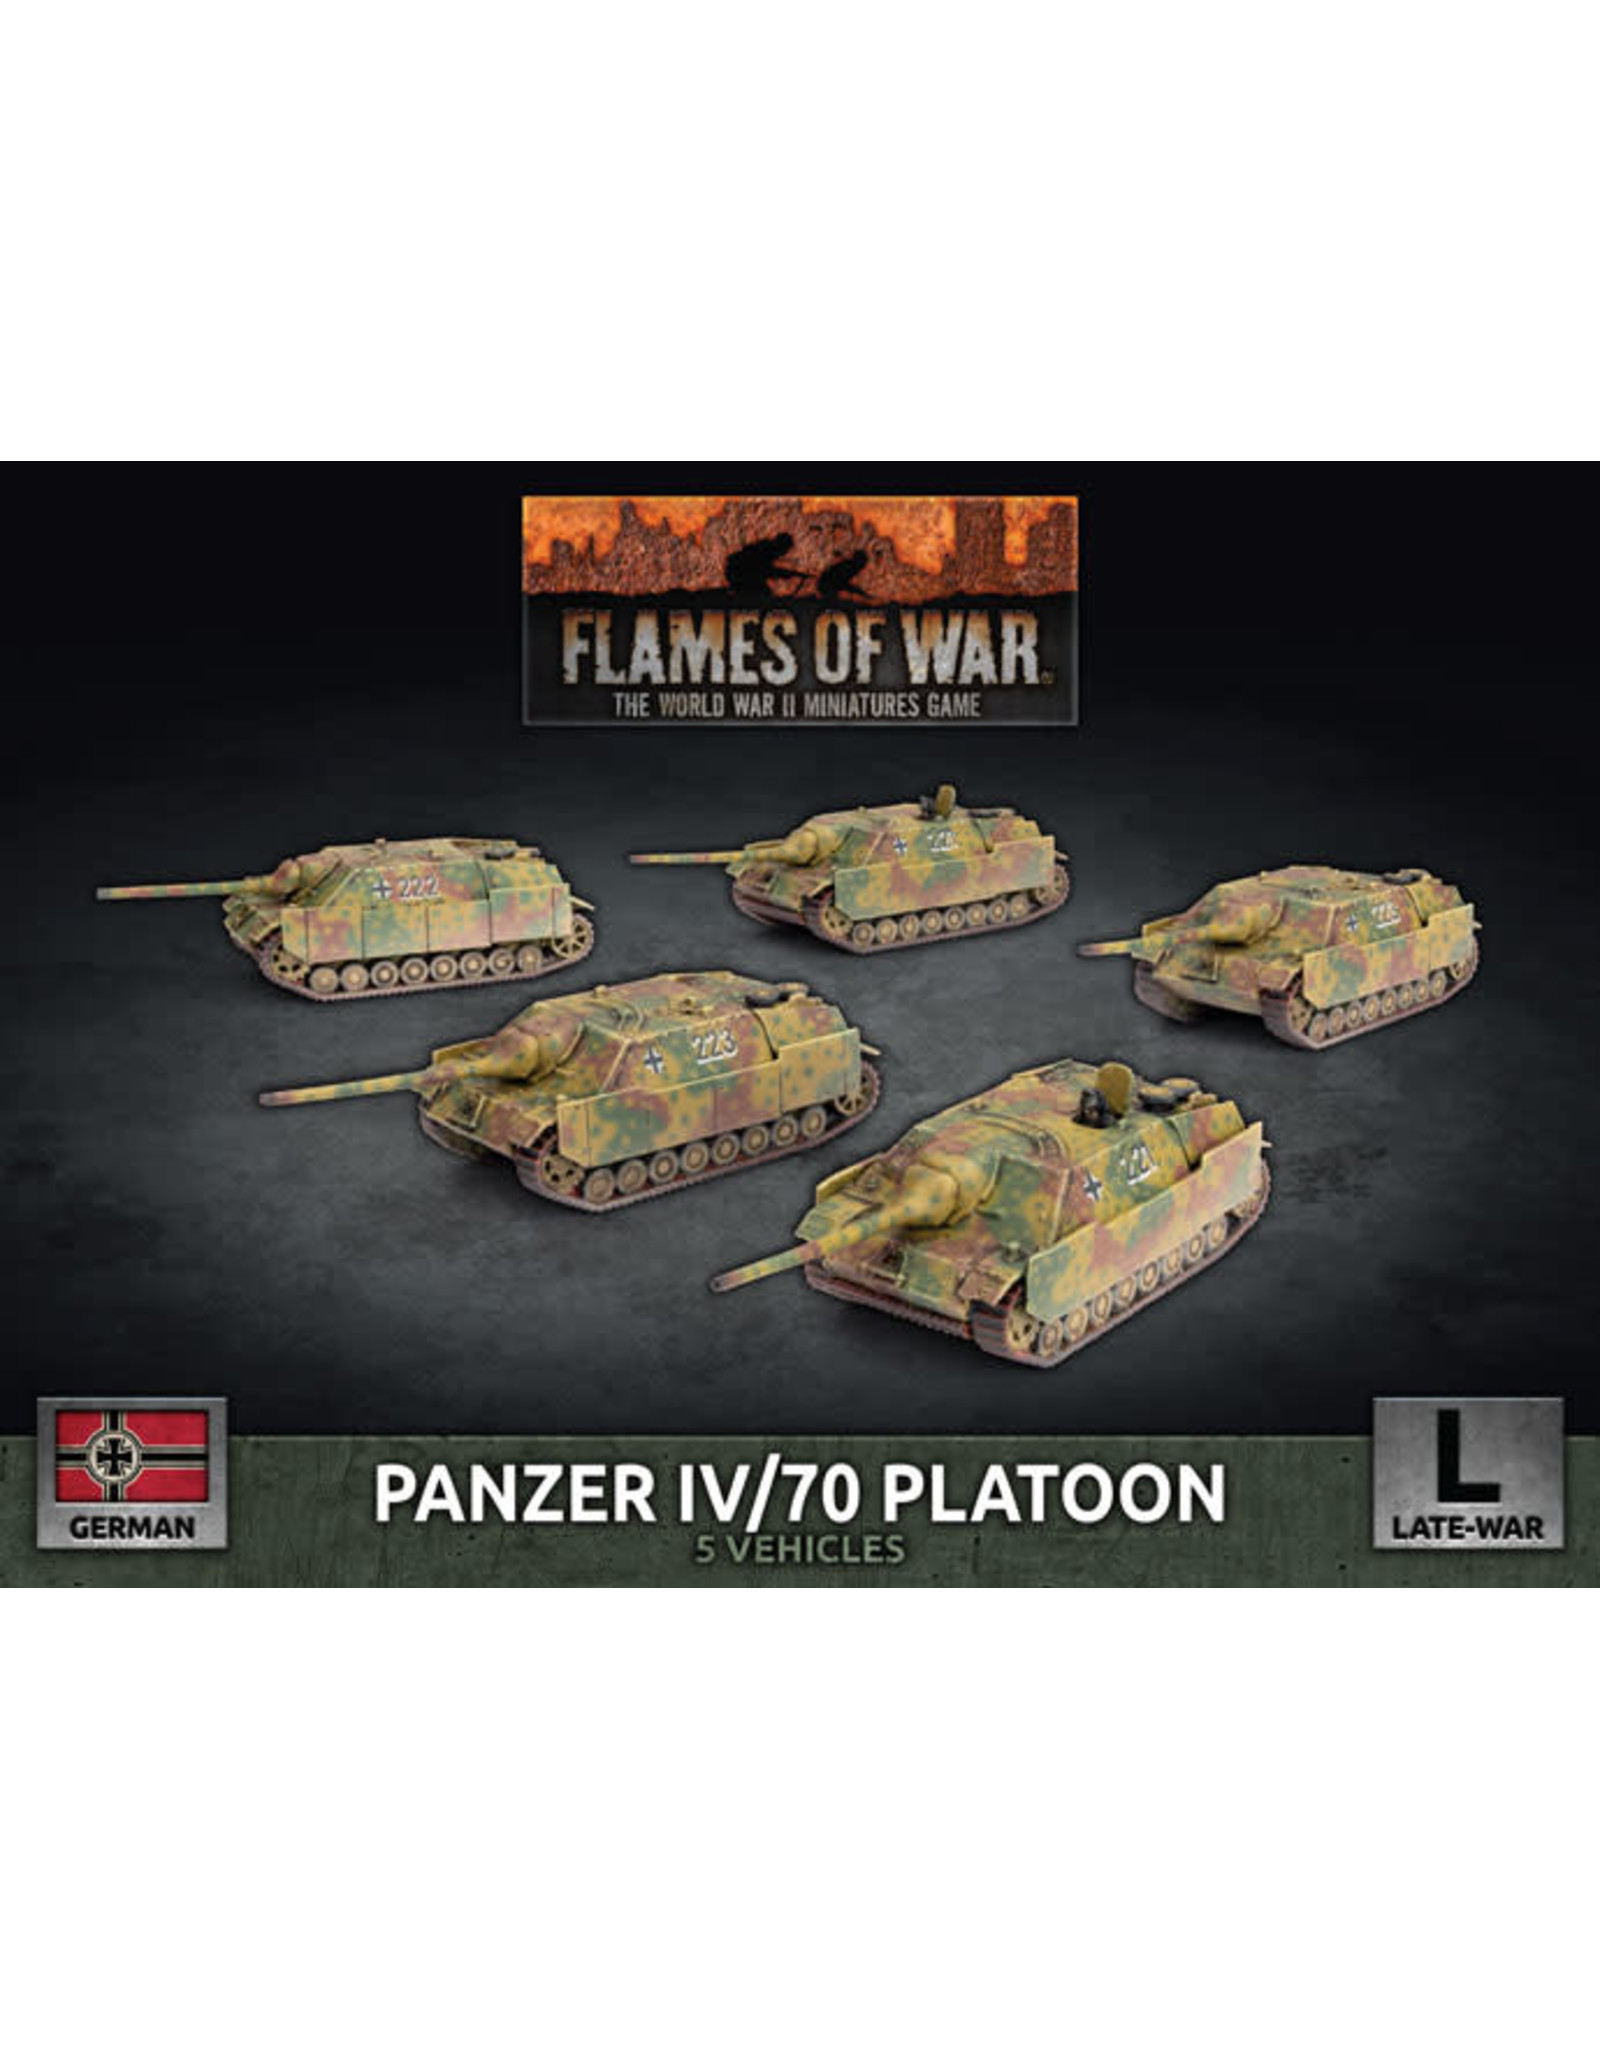 Battlefront Miniatures Flames of War Panzer IV/70 Platoon